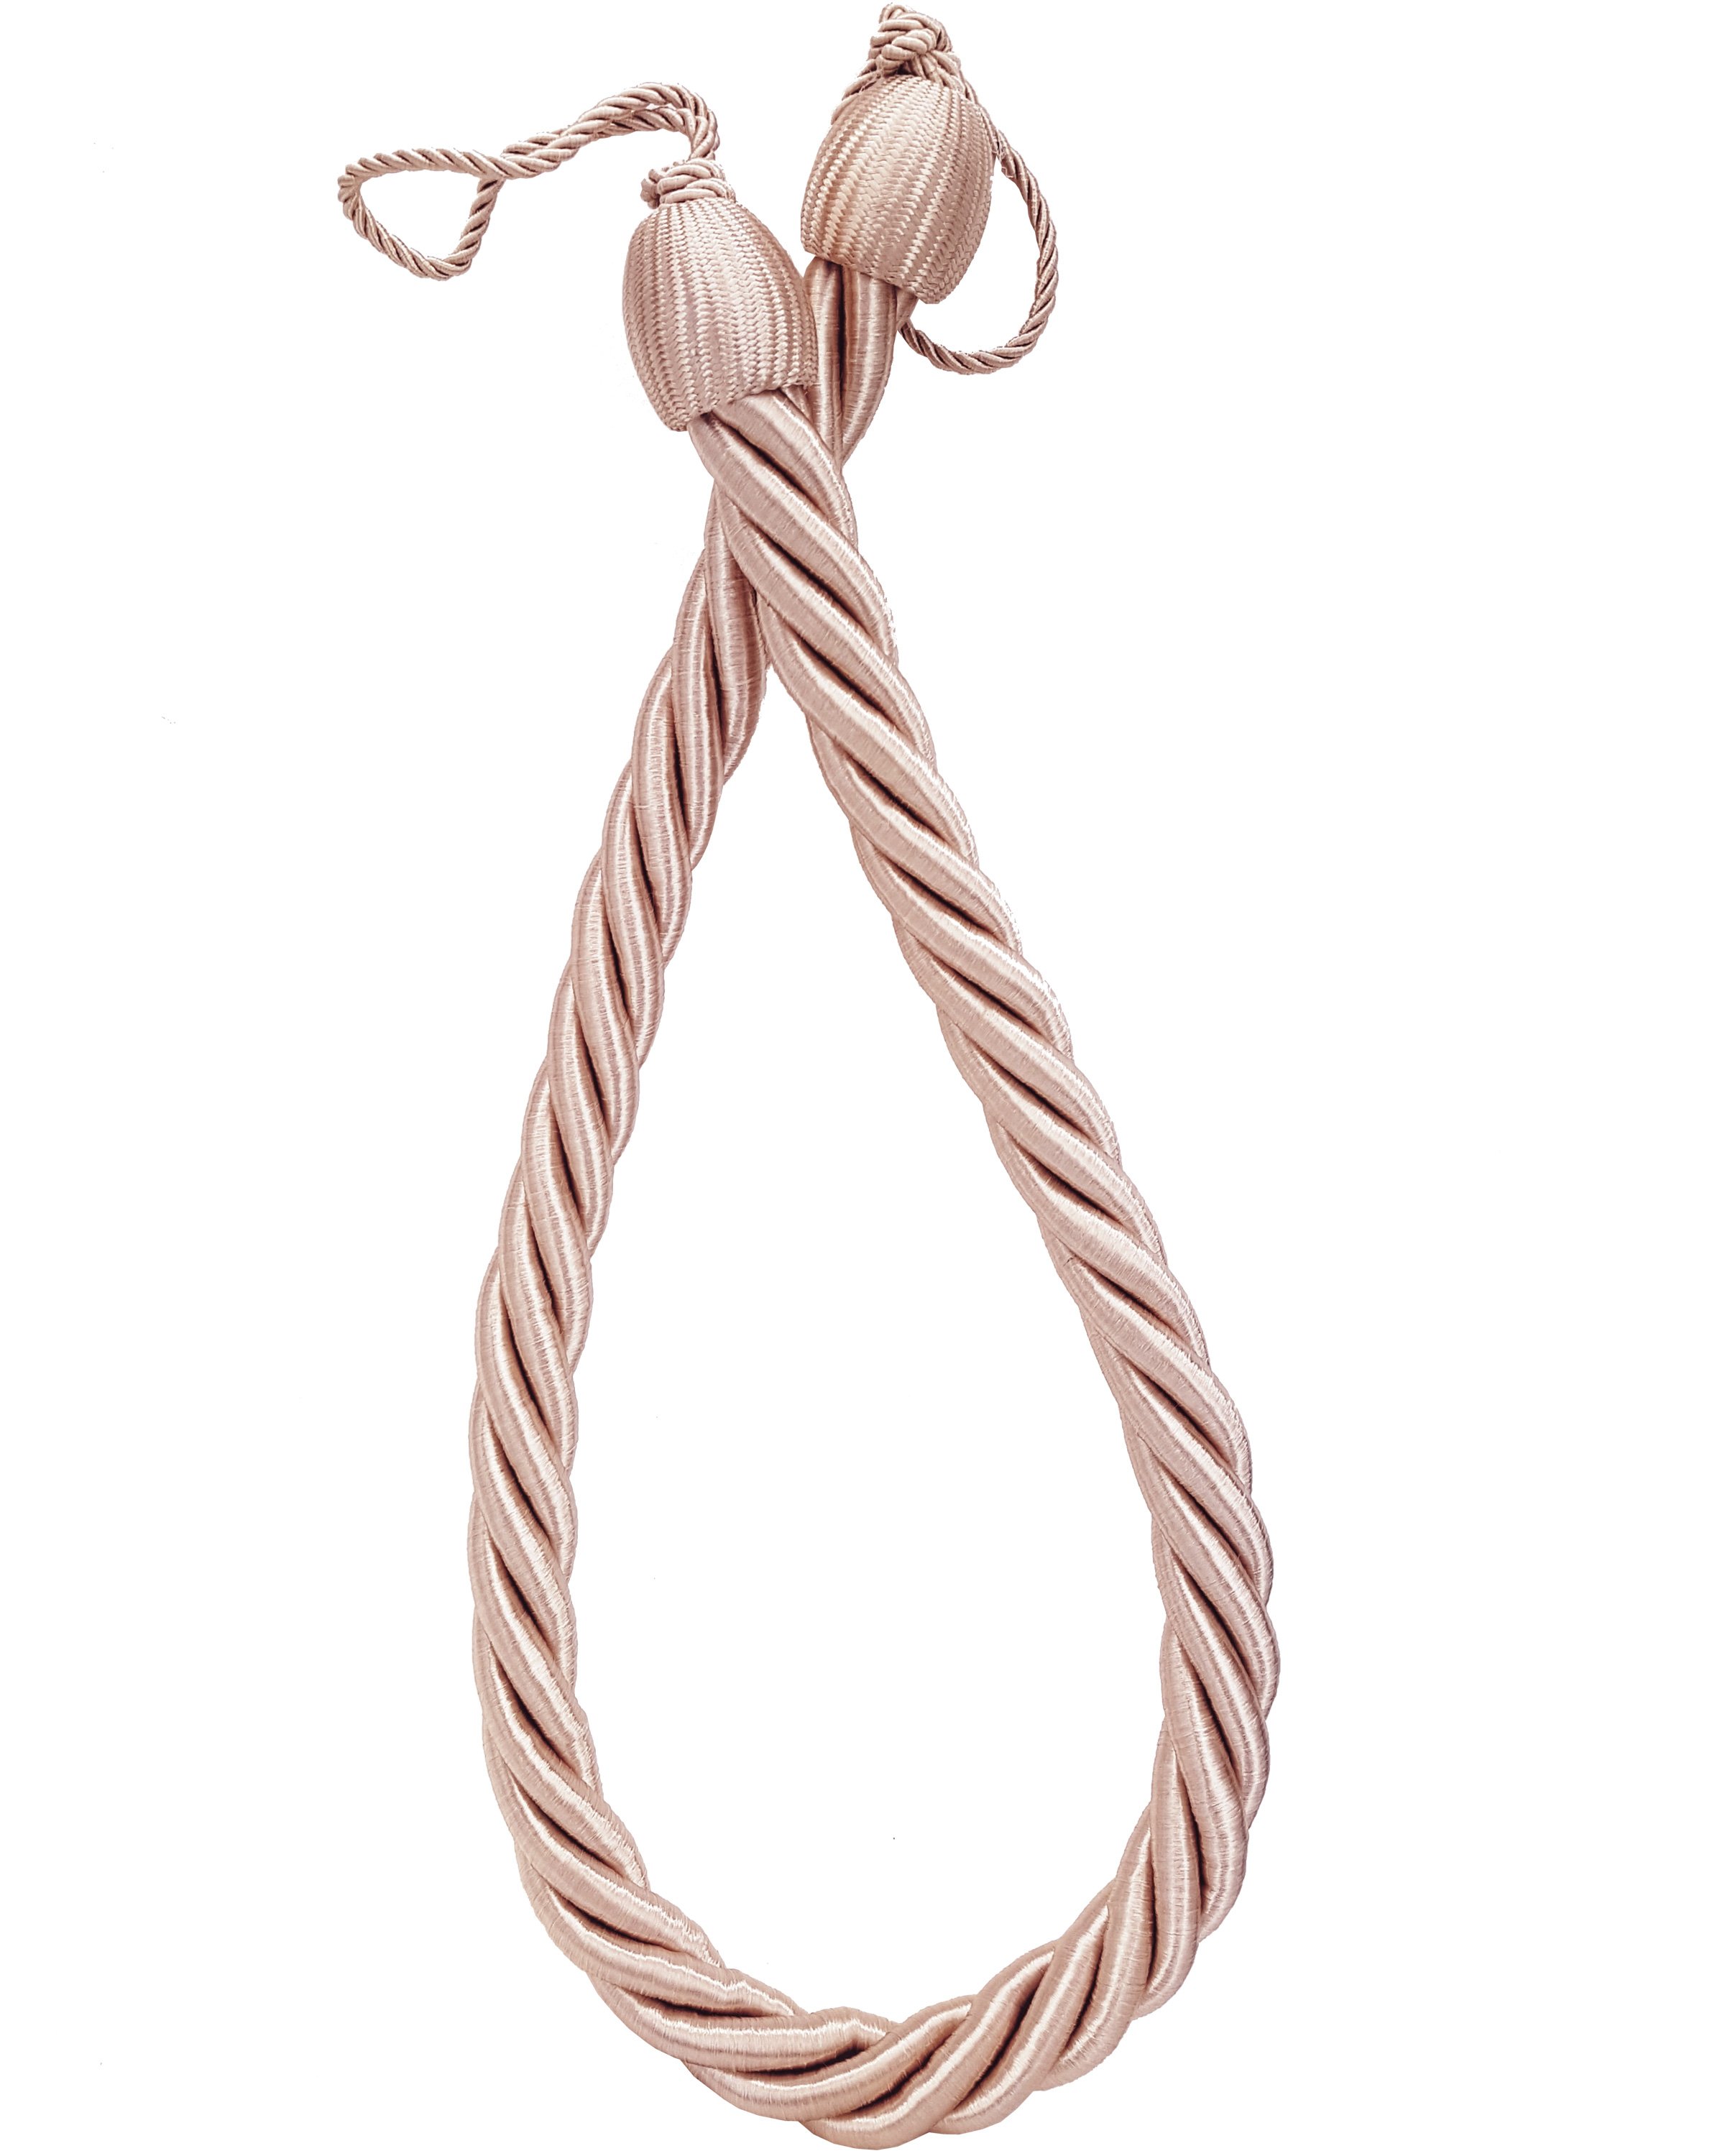 PAIR  Curtain tie back rope twist pale pink 85cm